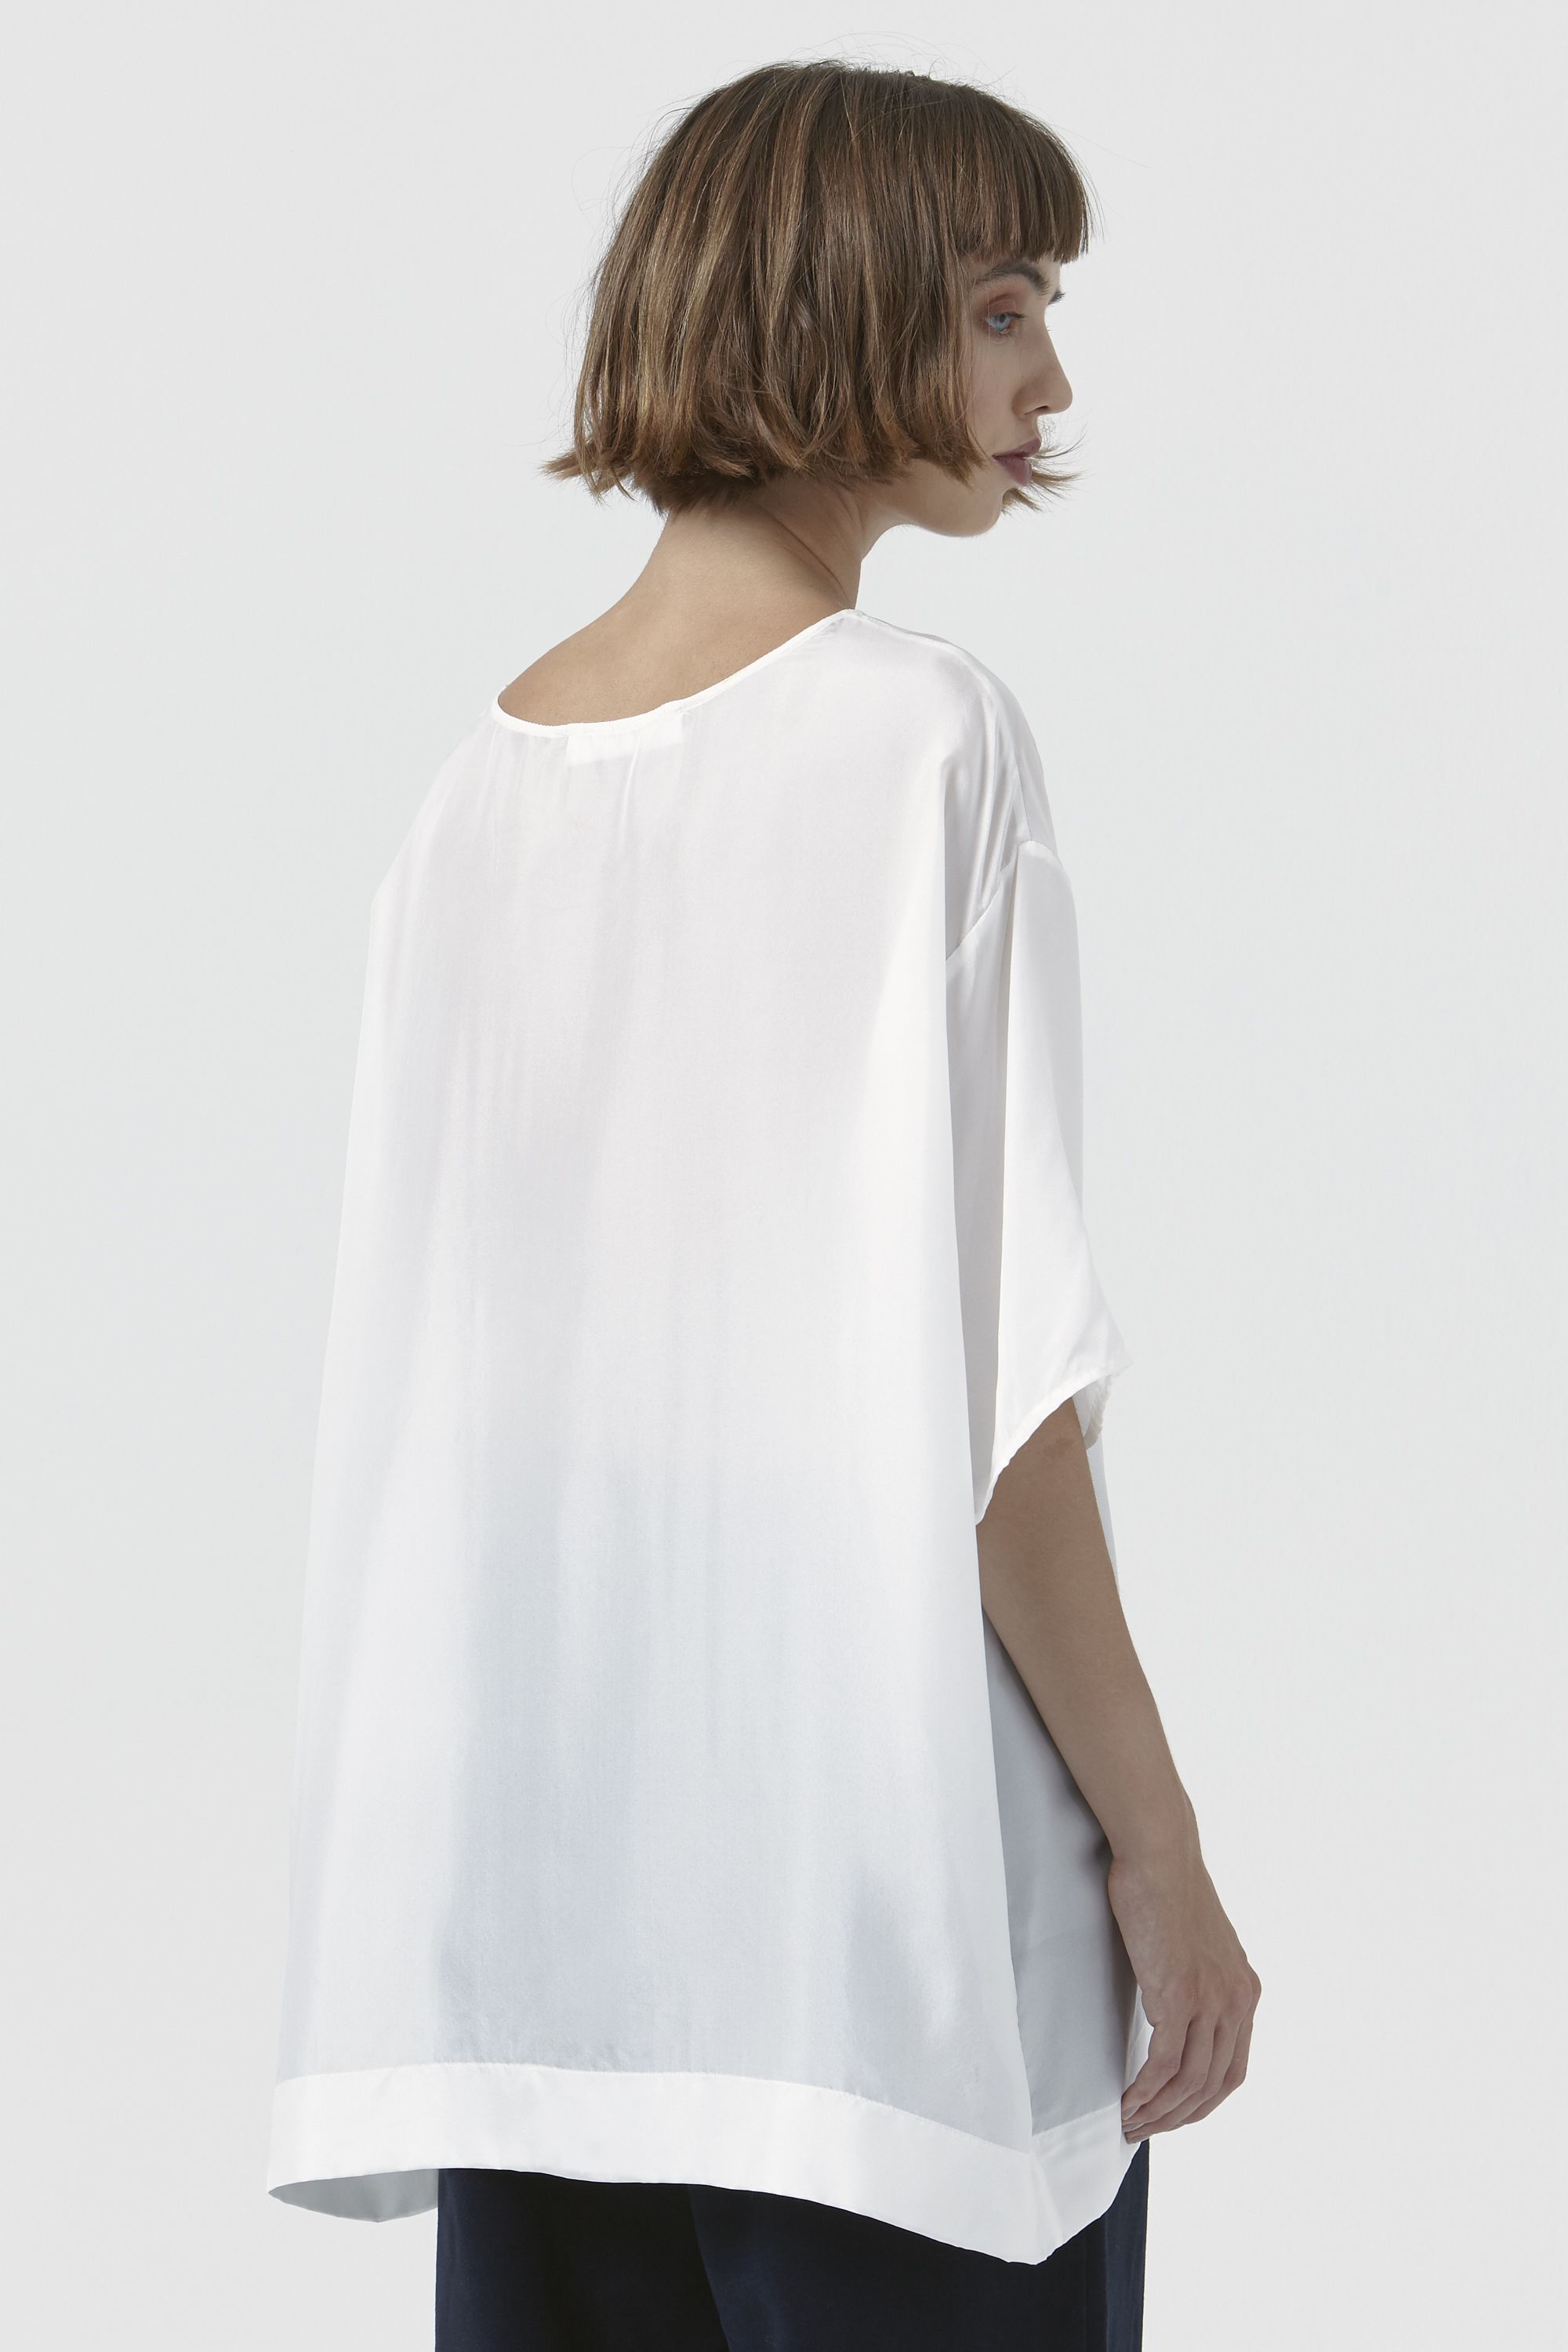 Maggie by Katharine Hamnett - White Silk T-Shirt - Women